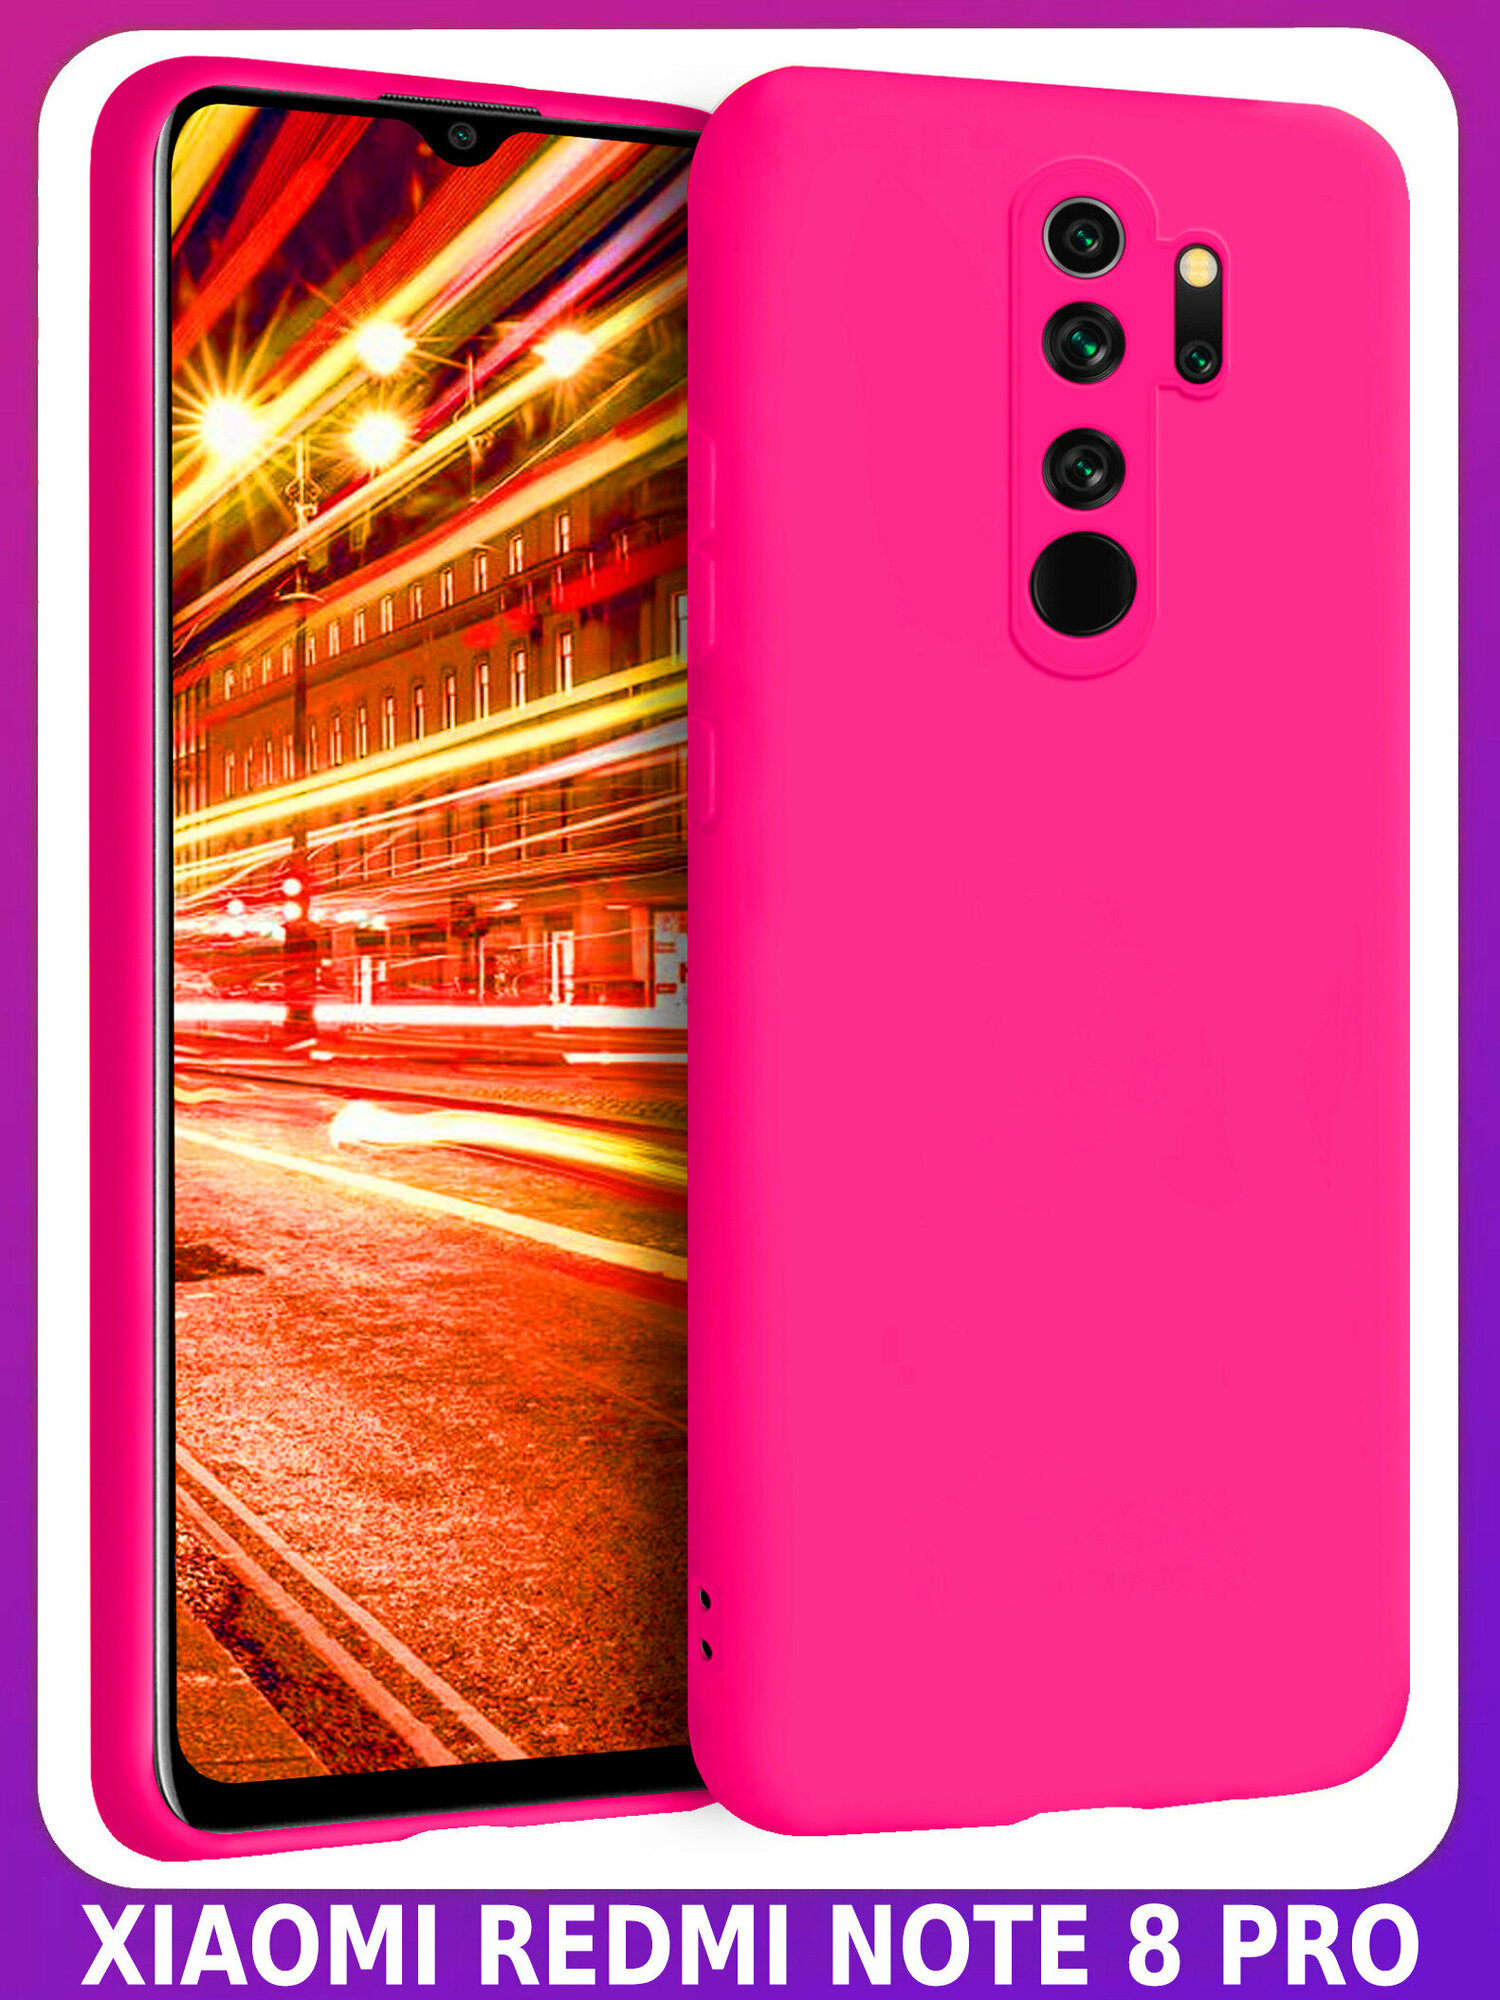 Ярко-розовый (фуксия) Soft Touch чехол класса Премиум - ХIАОМI редми ноут 8 PRO